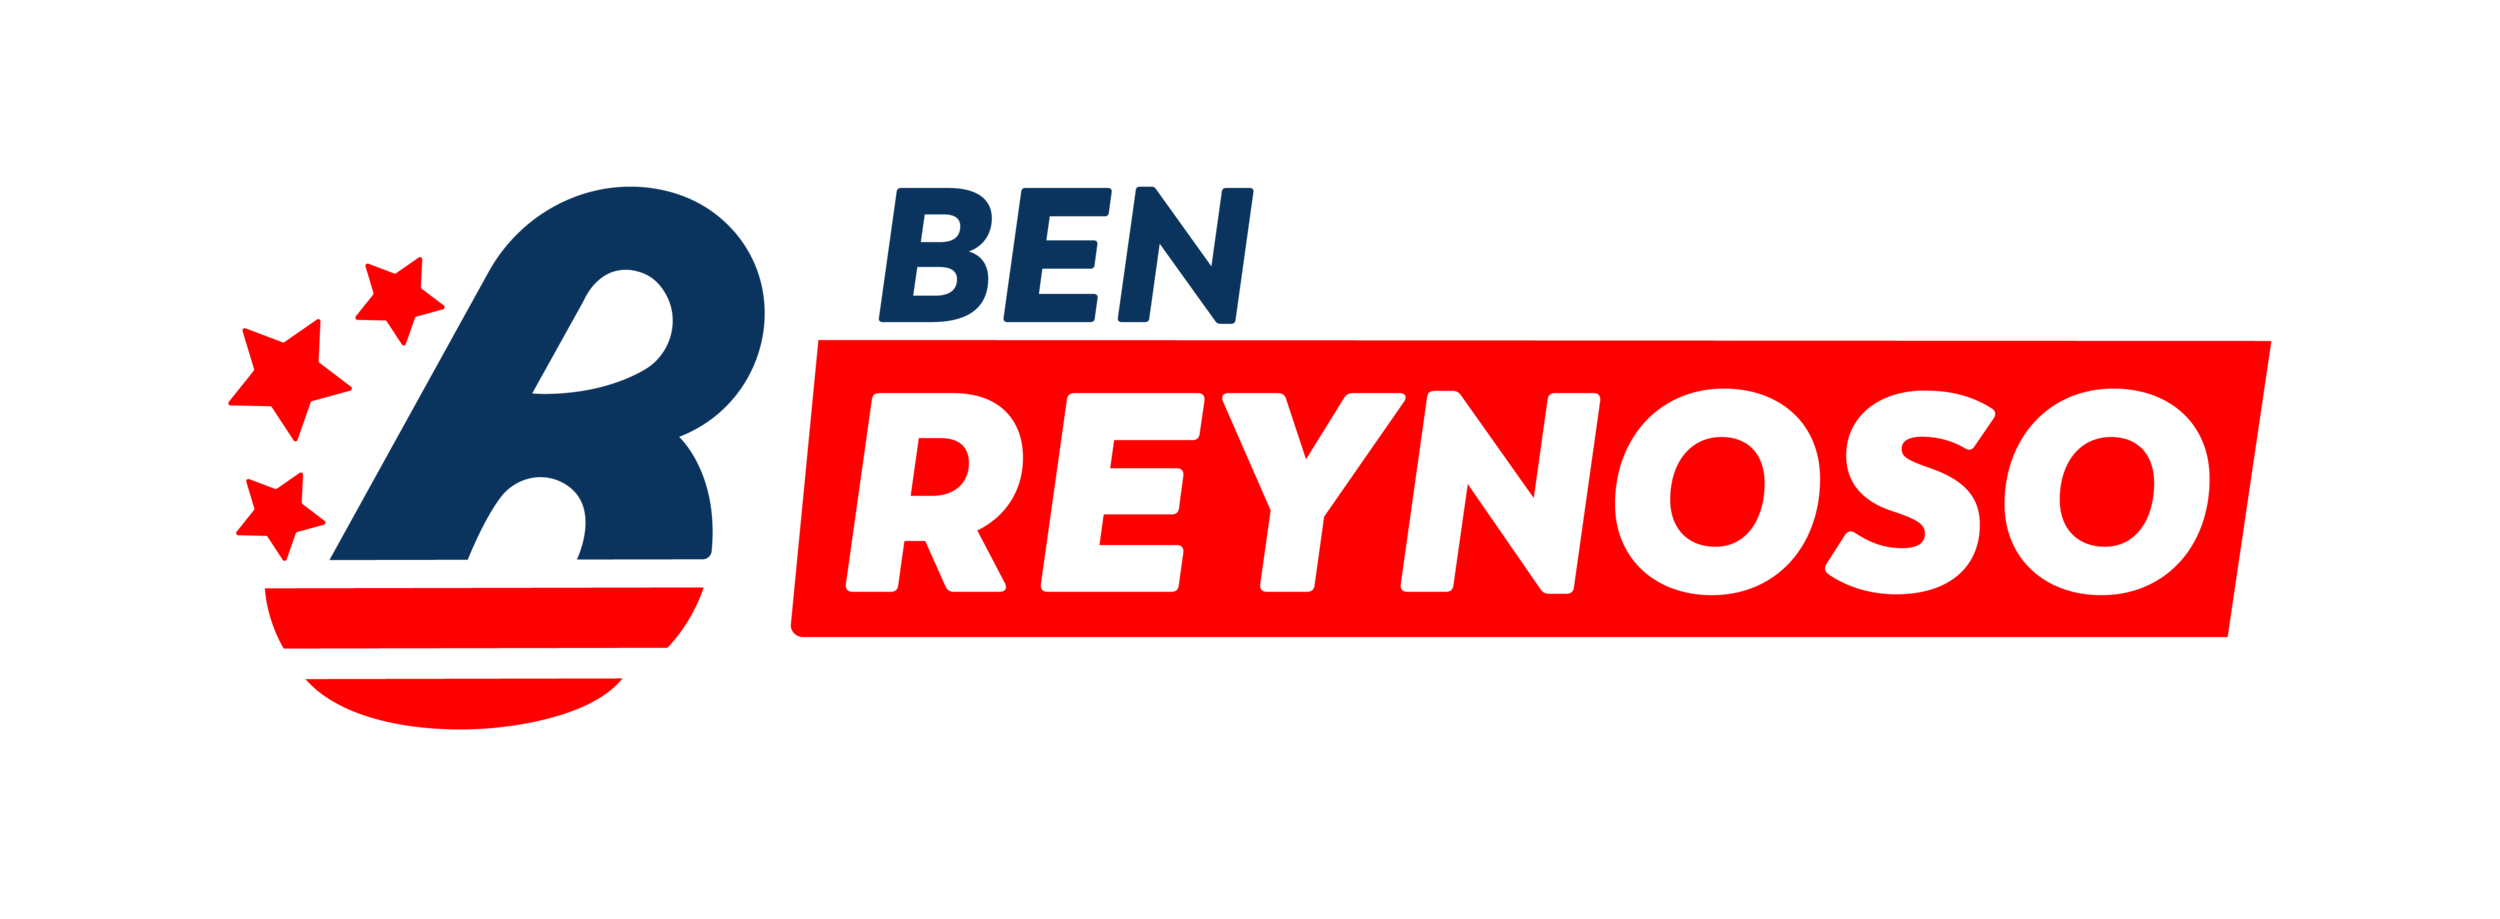 Ben Reynoso for San Bernardino&#39;s 5th Ward